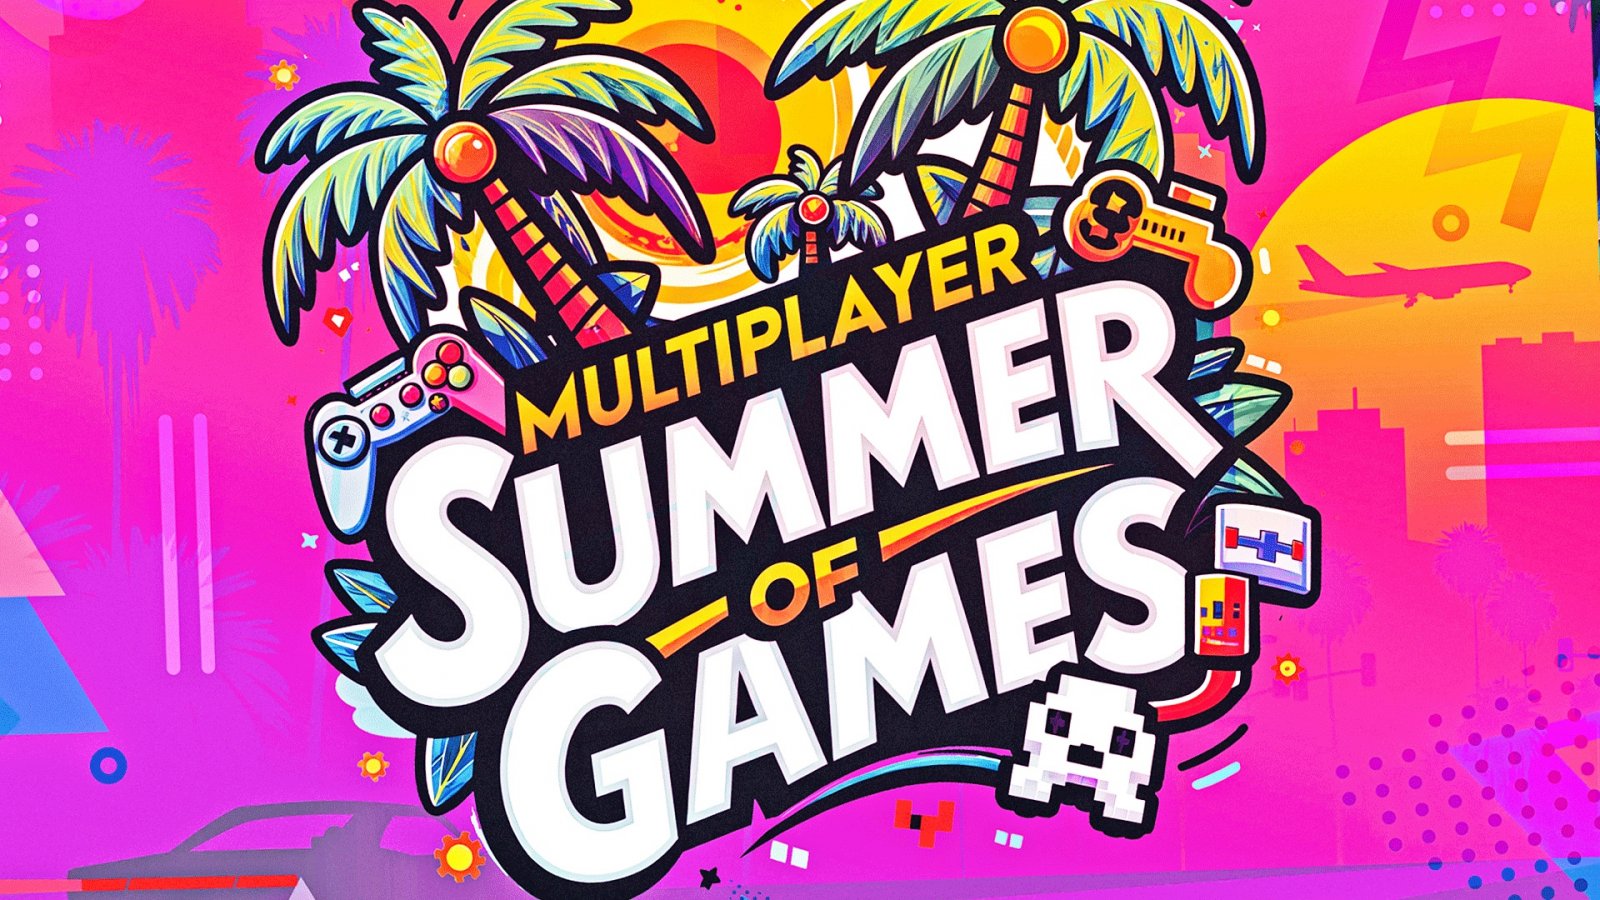 Il logo della Multiplayer.it Summer of Games. Non trovate sia rinfrescante?